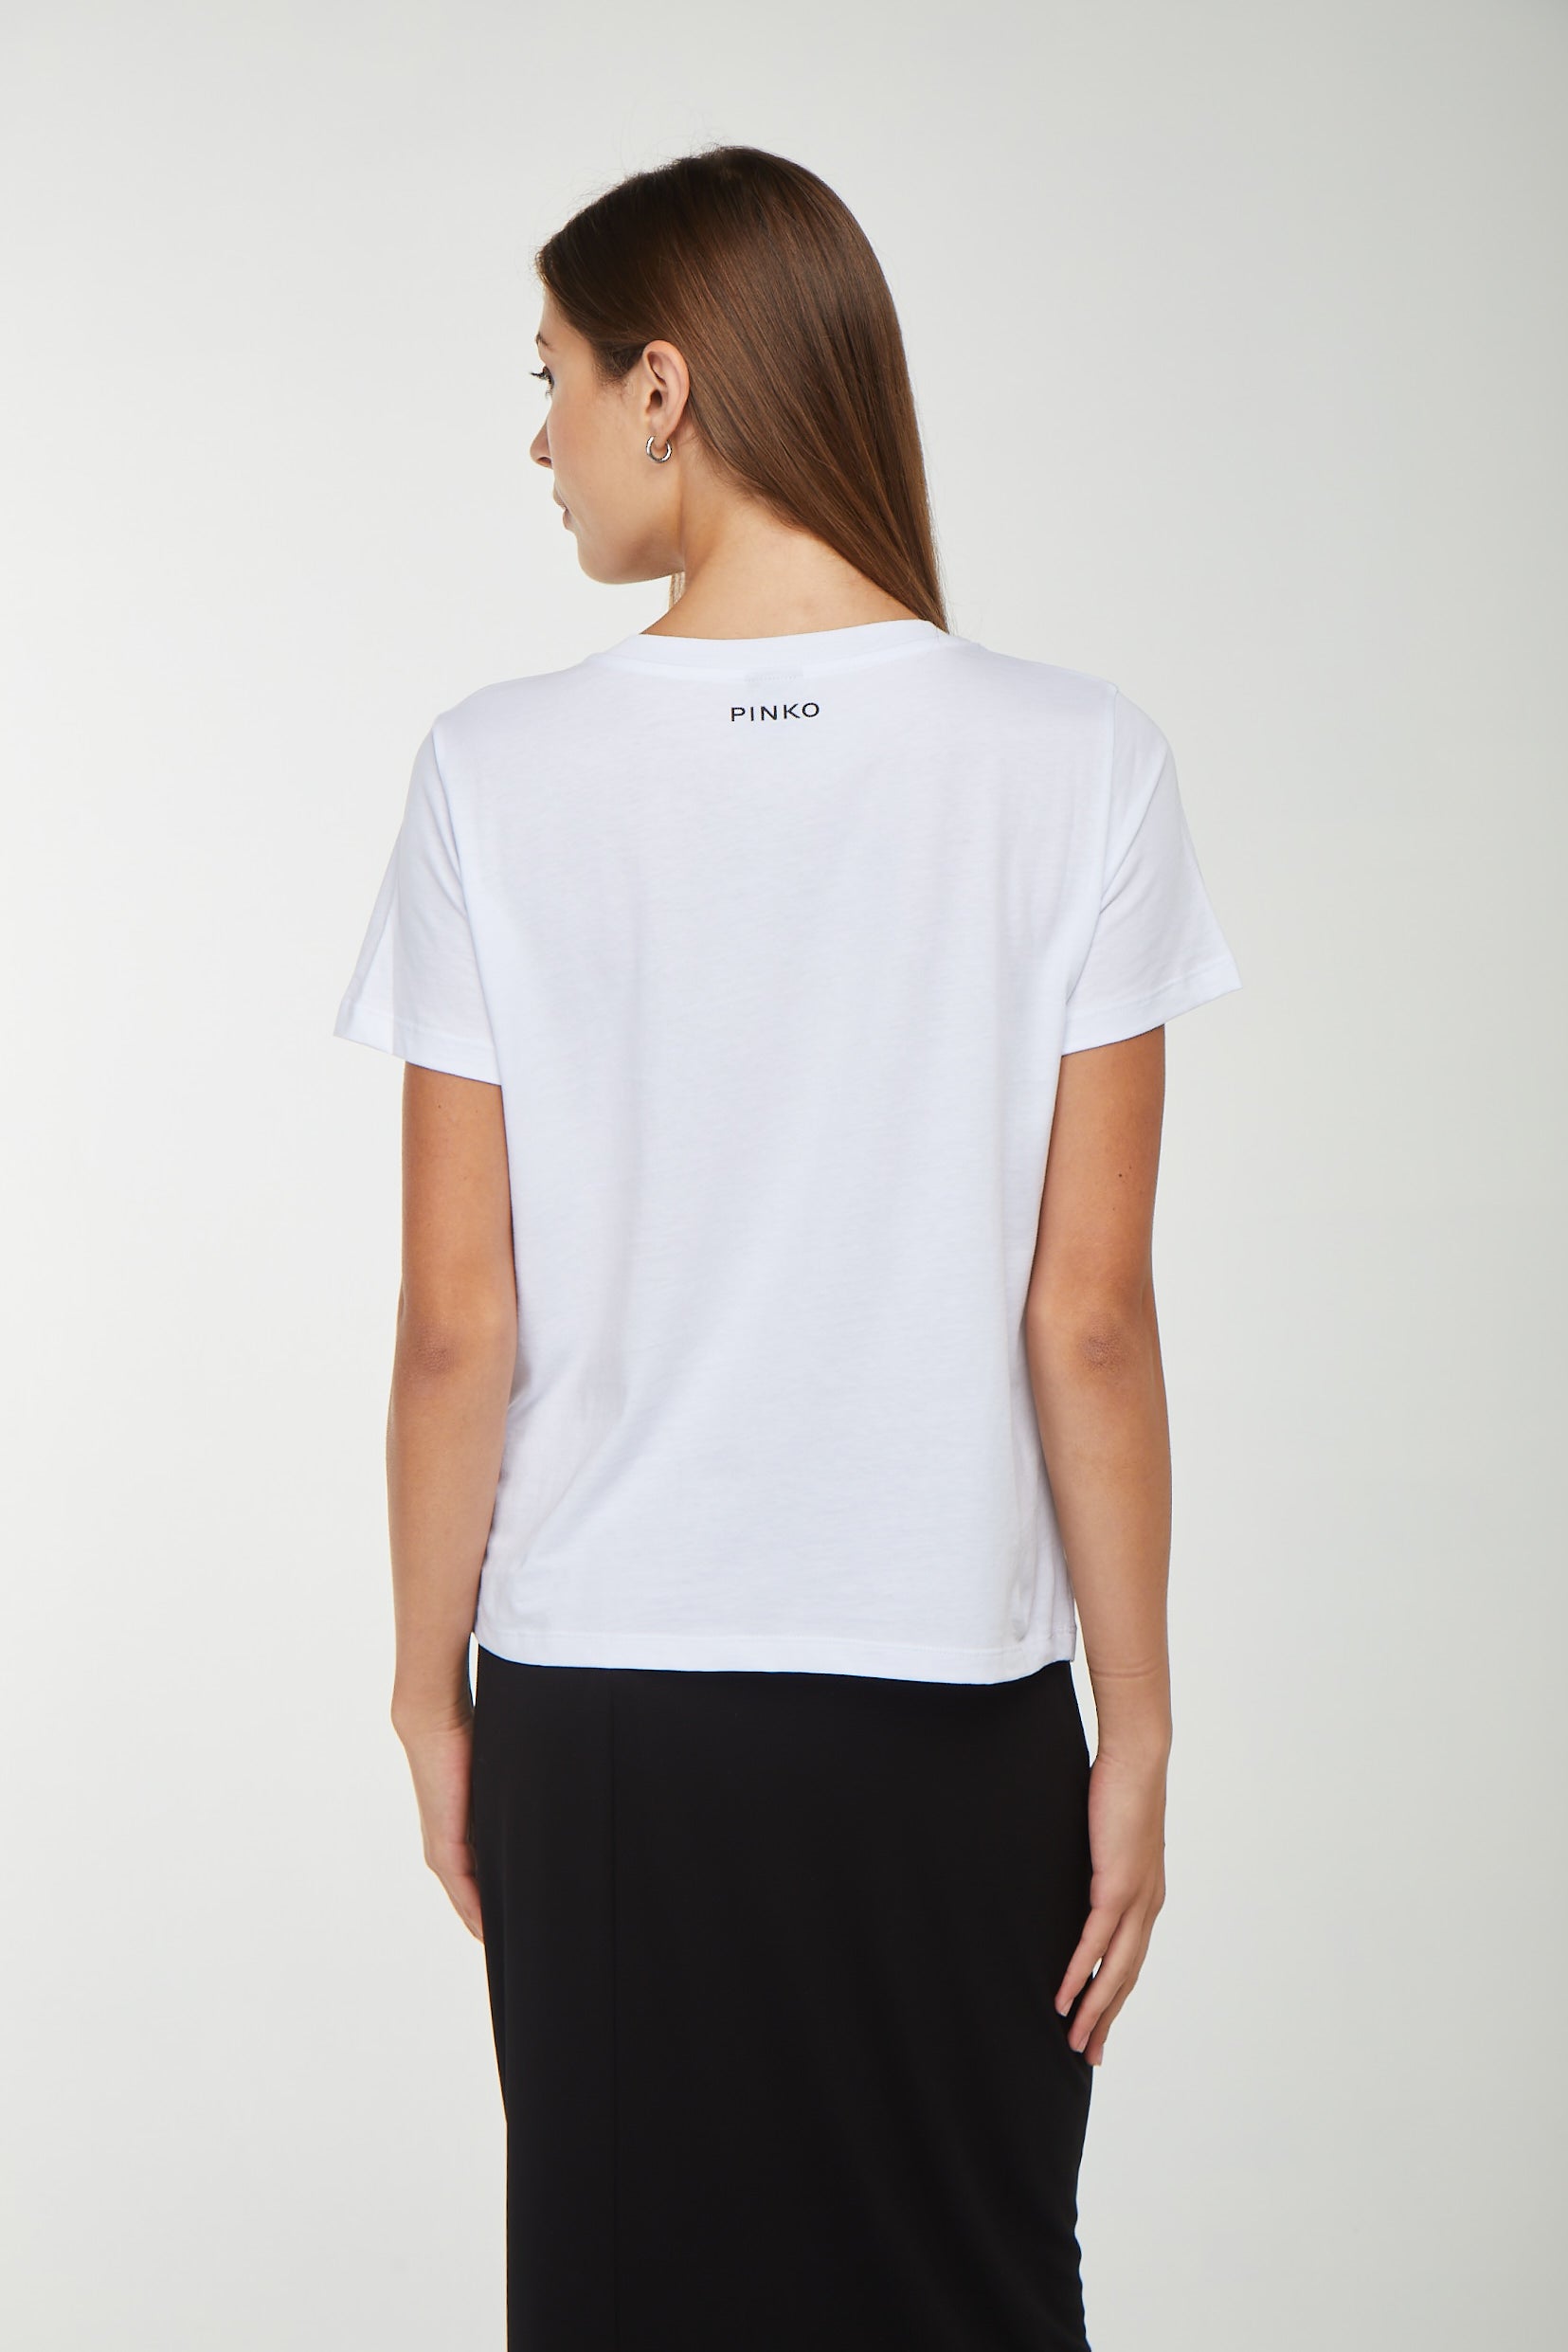 PINKO Weißes T-Shirt mit Aufdruck